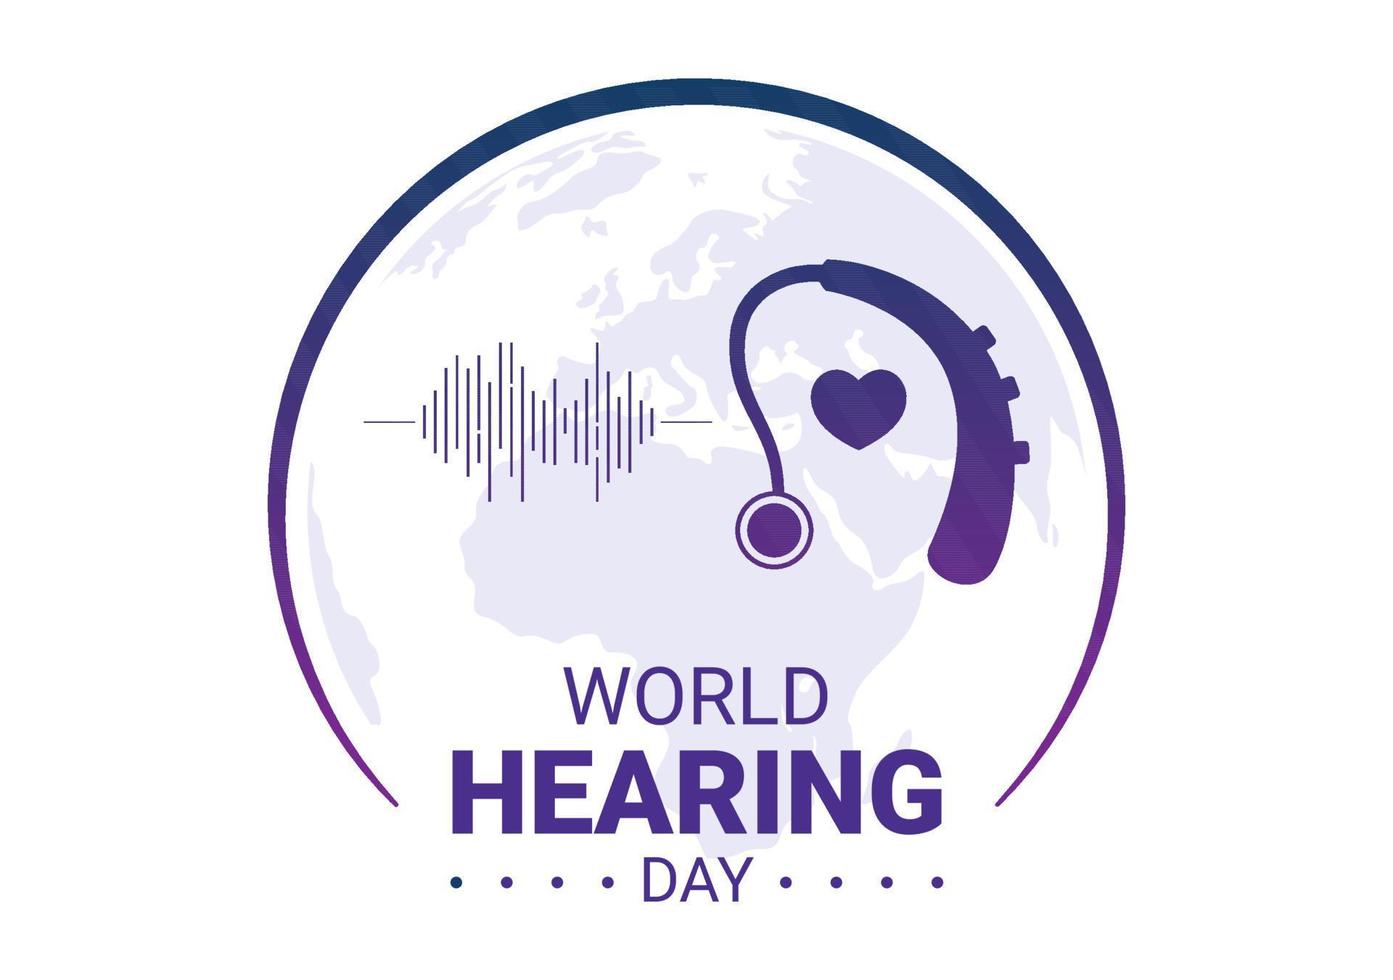 ilustración del día mundial de la audición para crear conciencia sobre cómo prevenir la sordera para el banner web o la página de inicio en plantillas planas dibujadas a mano de dibujos animados vector